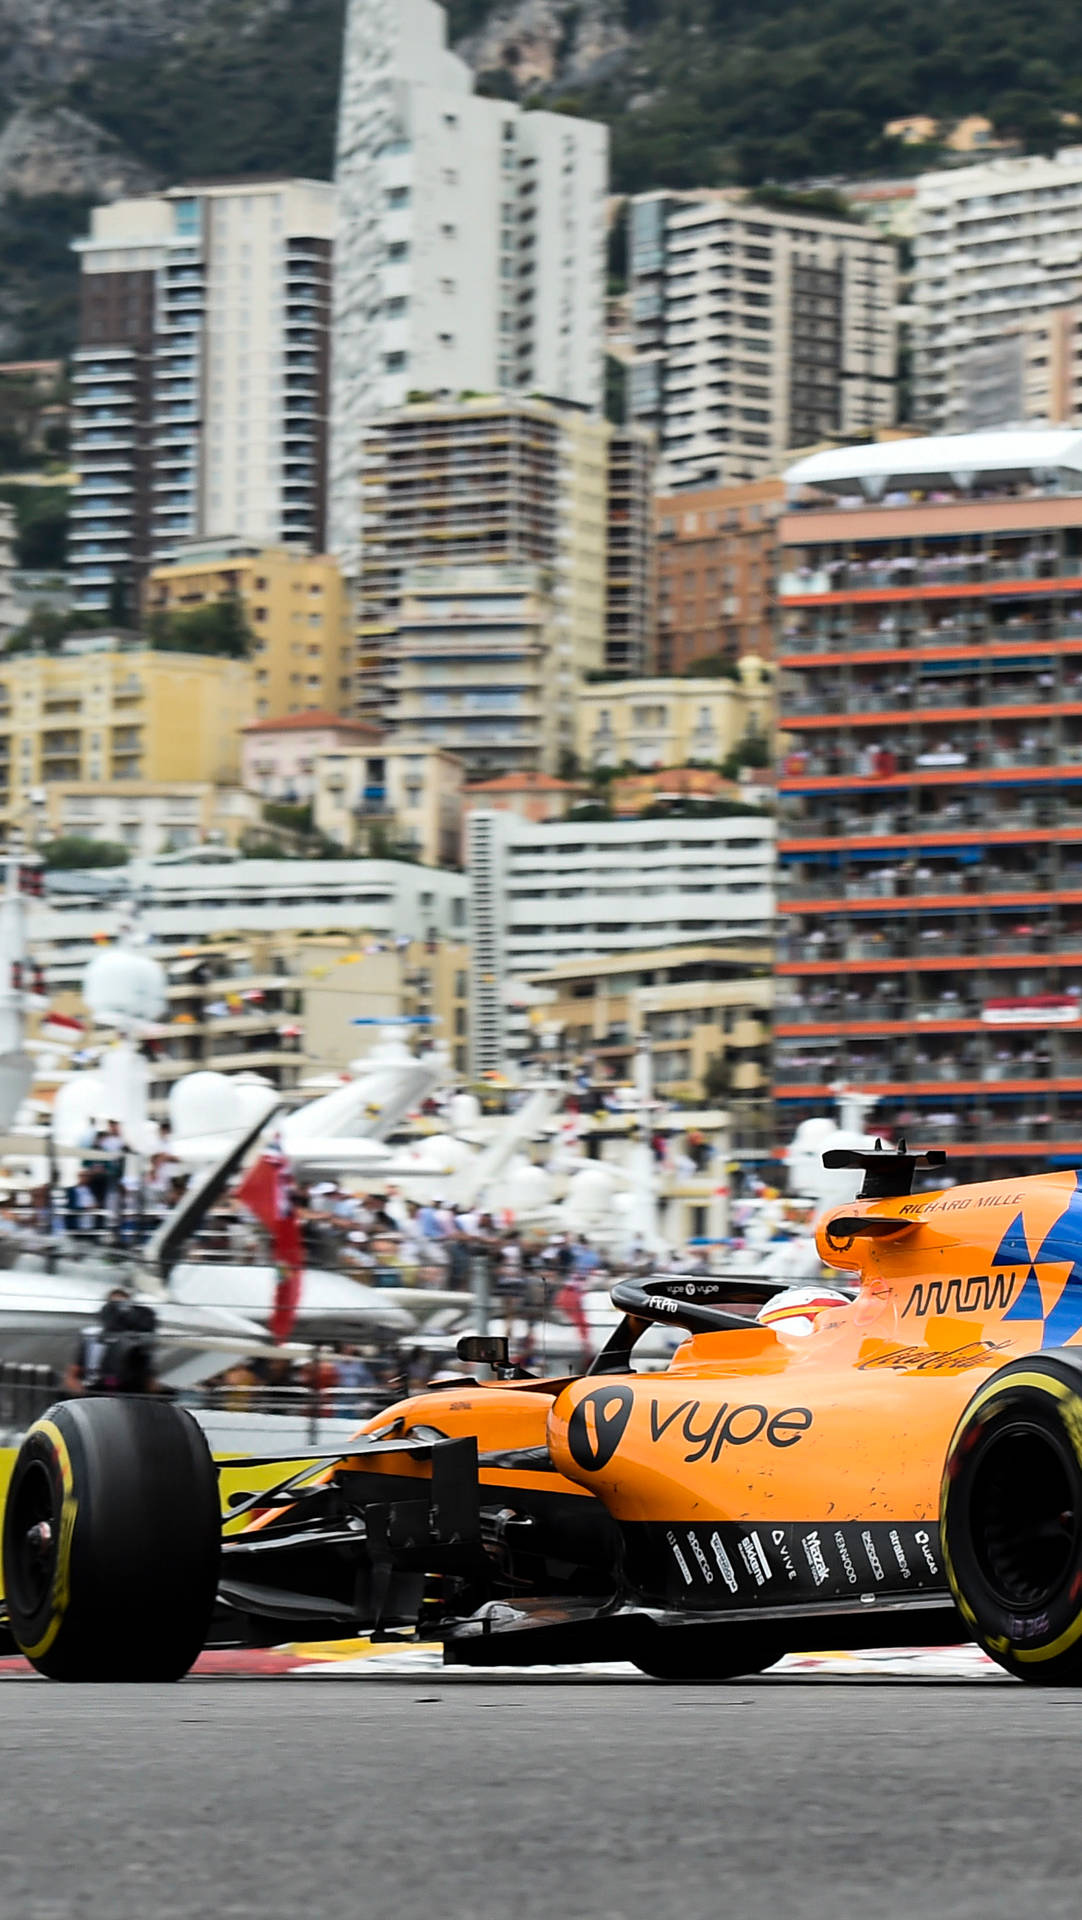 F1 Mclaren On Monaco Circuit Iphone Background